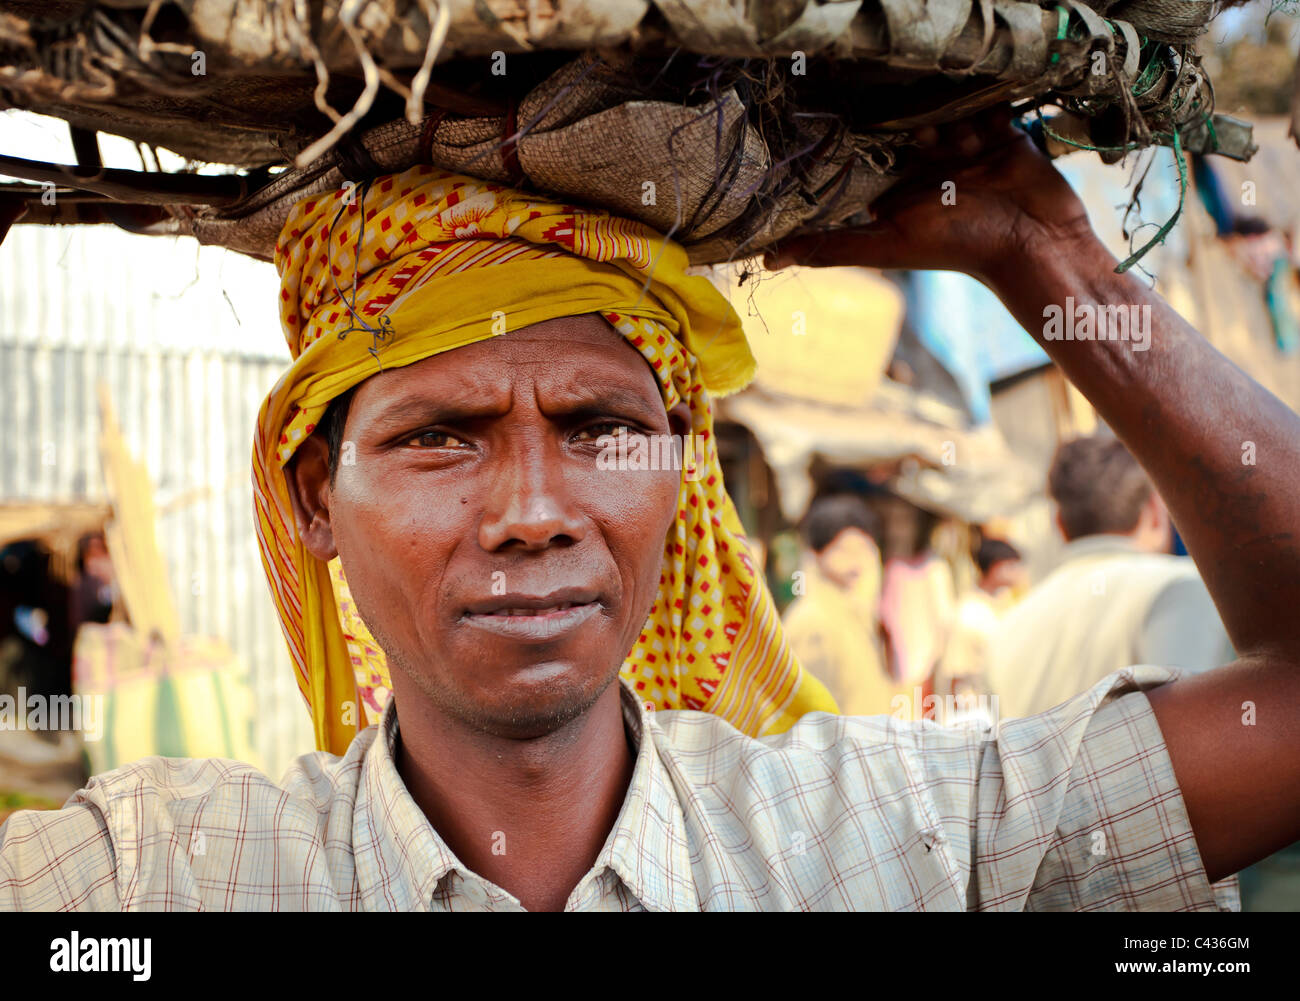 Porträt der Arbeiter mit einem Korb auf dem Kopf aus dem Malik Ghat Blumenmarkt in Kolkata, West Bengal, Indien Stockfoto